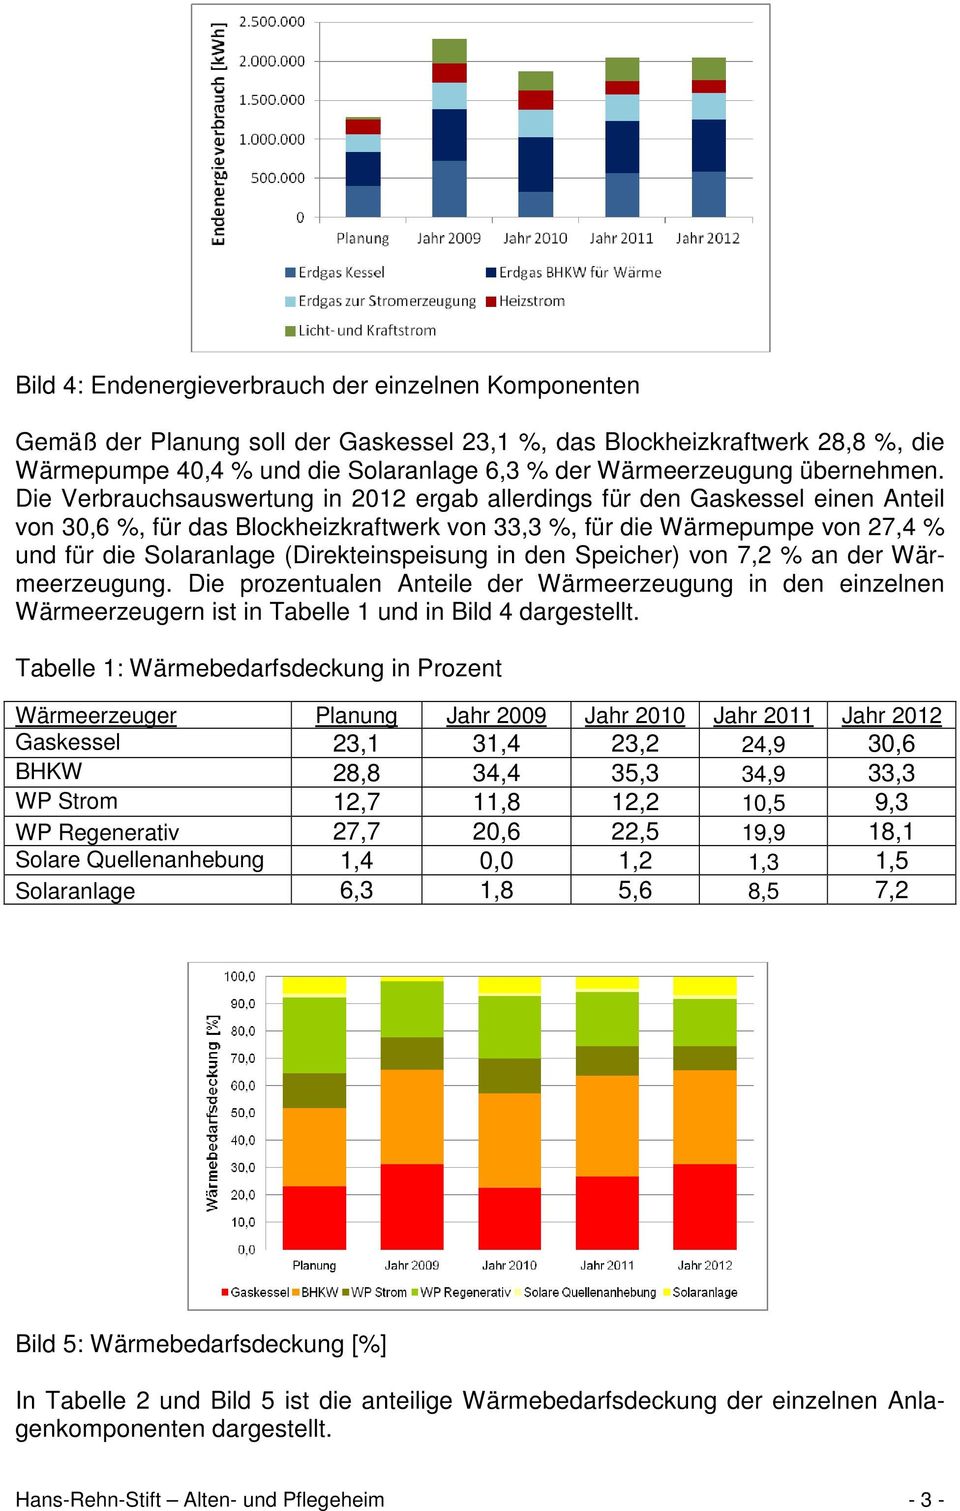 Die Verbrauchsauswertung in 2012 ergab allerdings für den Gaskessel einen Anteil von 30,6 %, für das Blockheizkraftwerk von 33,3 %, für die Wärmepumpe von 27,4 % und für die Solaranlage